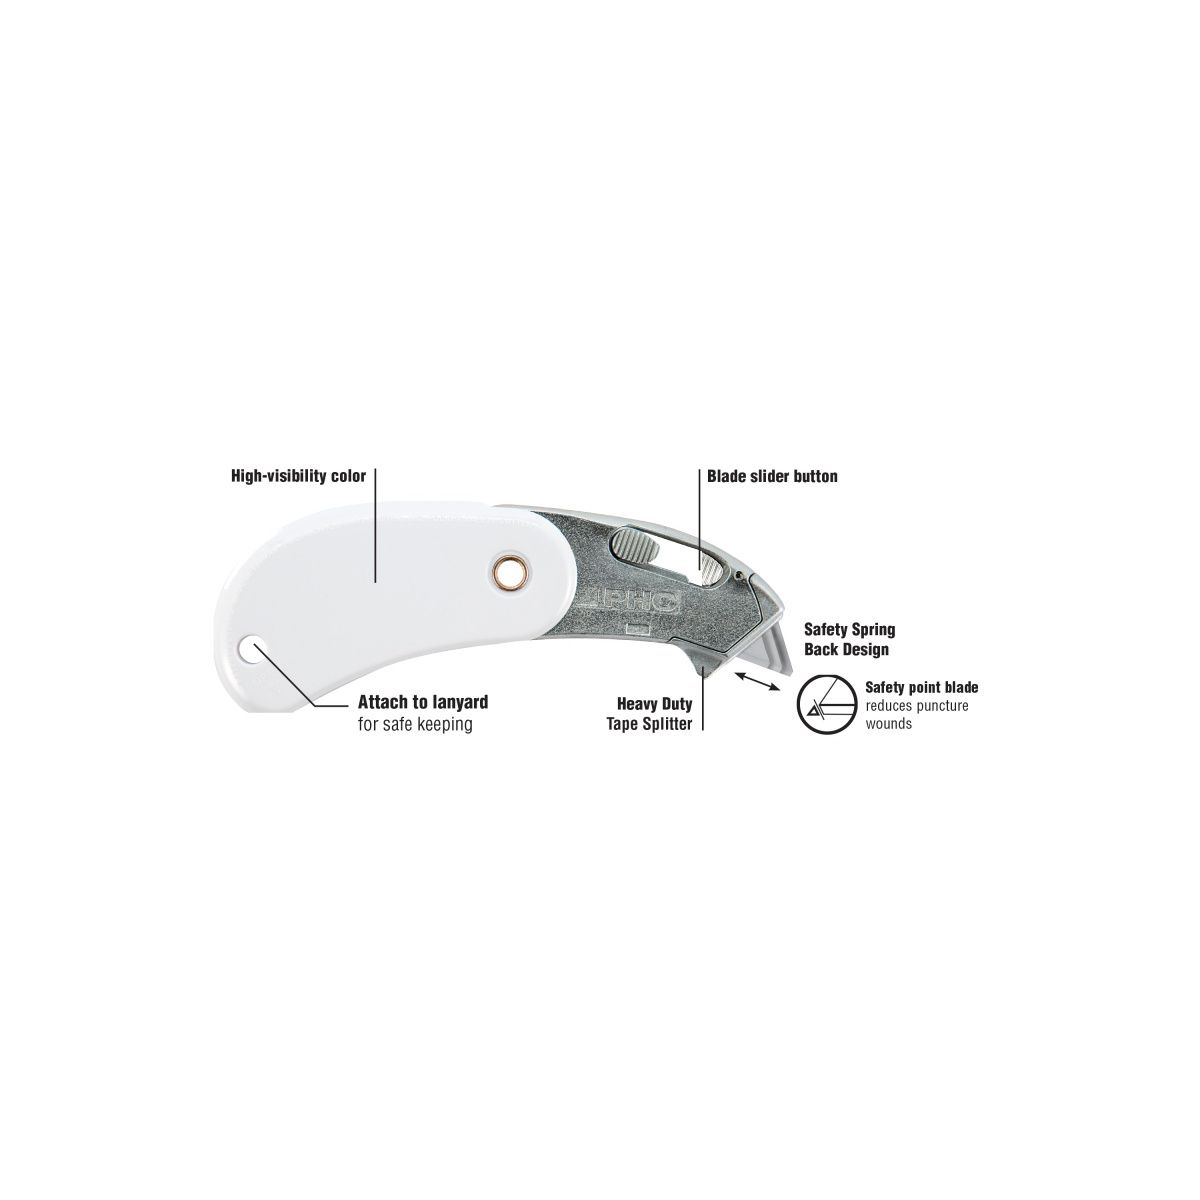 Nóż Phc Psc2 bezpieczny składany biały (BH-PSC2-100)